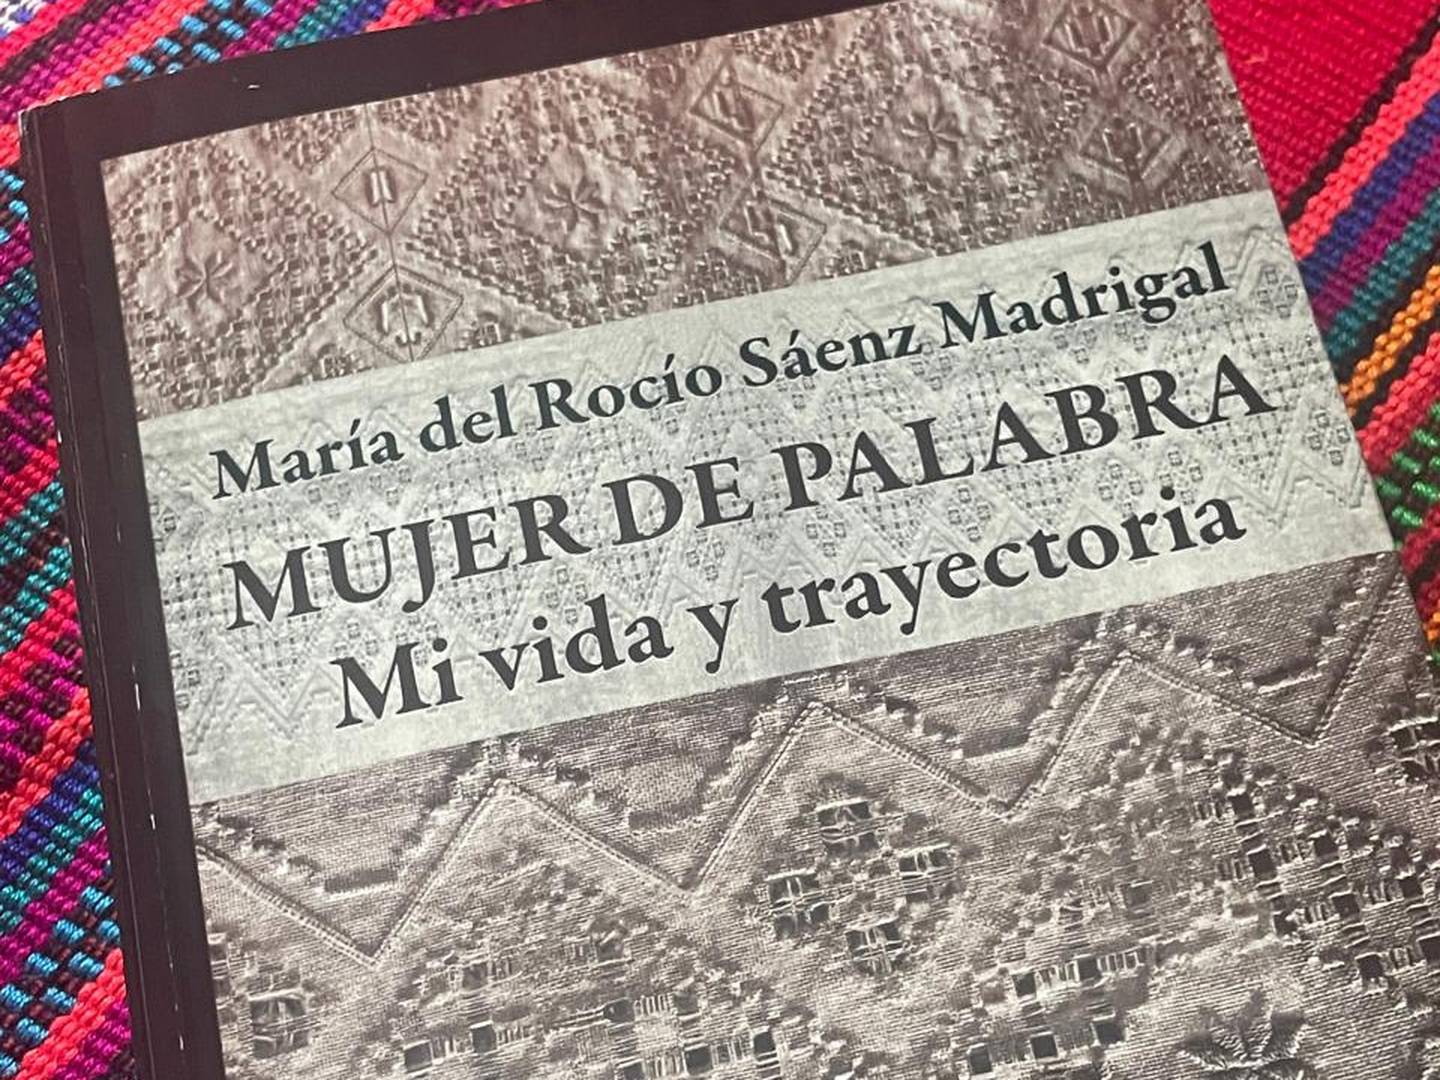 Libro de María del Rocío Sáenz Madrigal. Presentado el 28 de mayo 2024